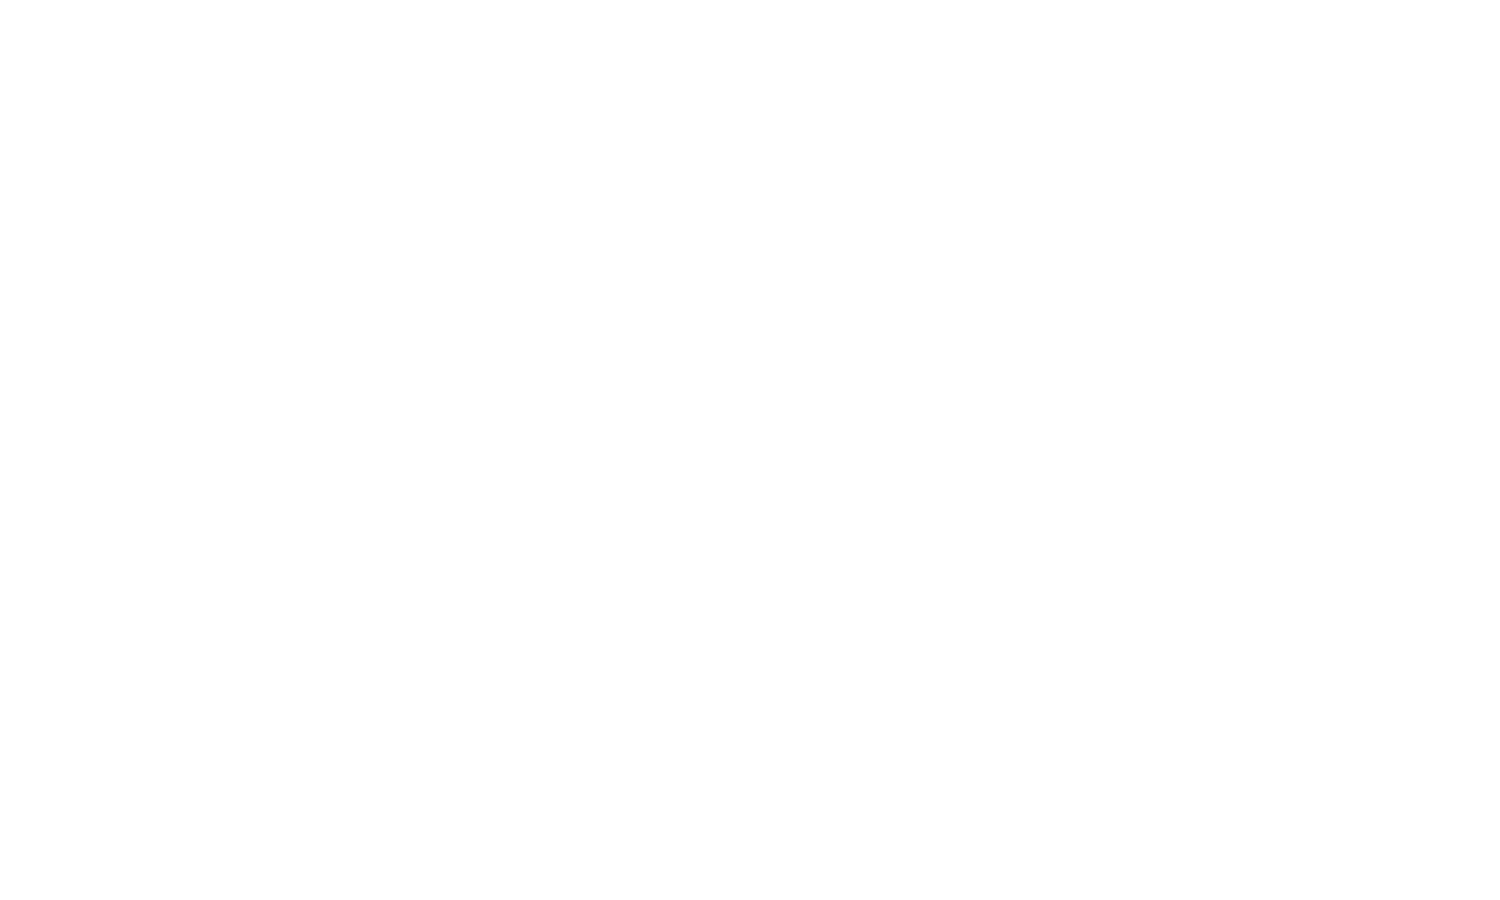 The Longstore